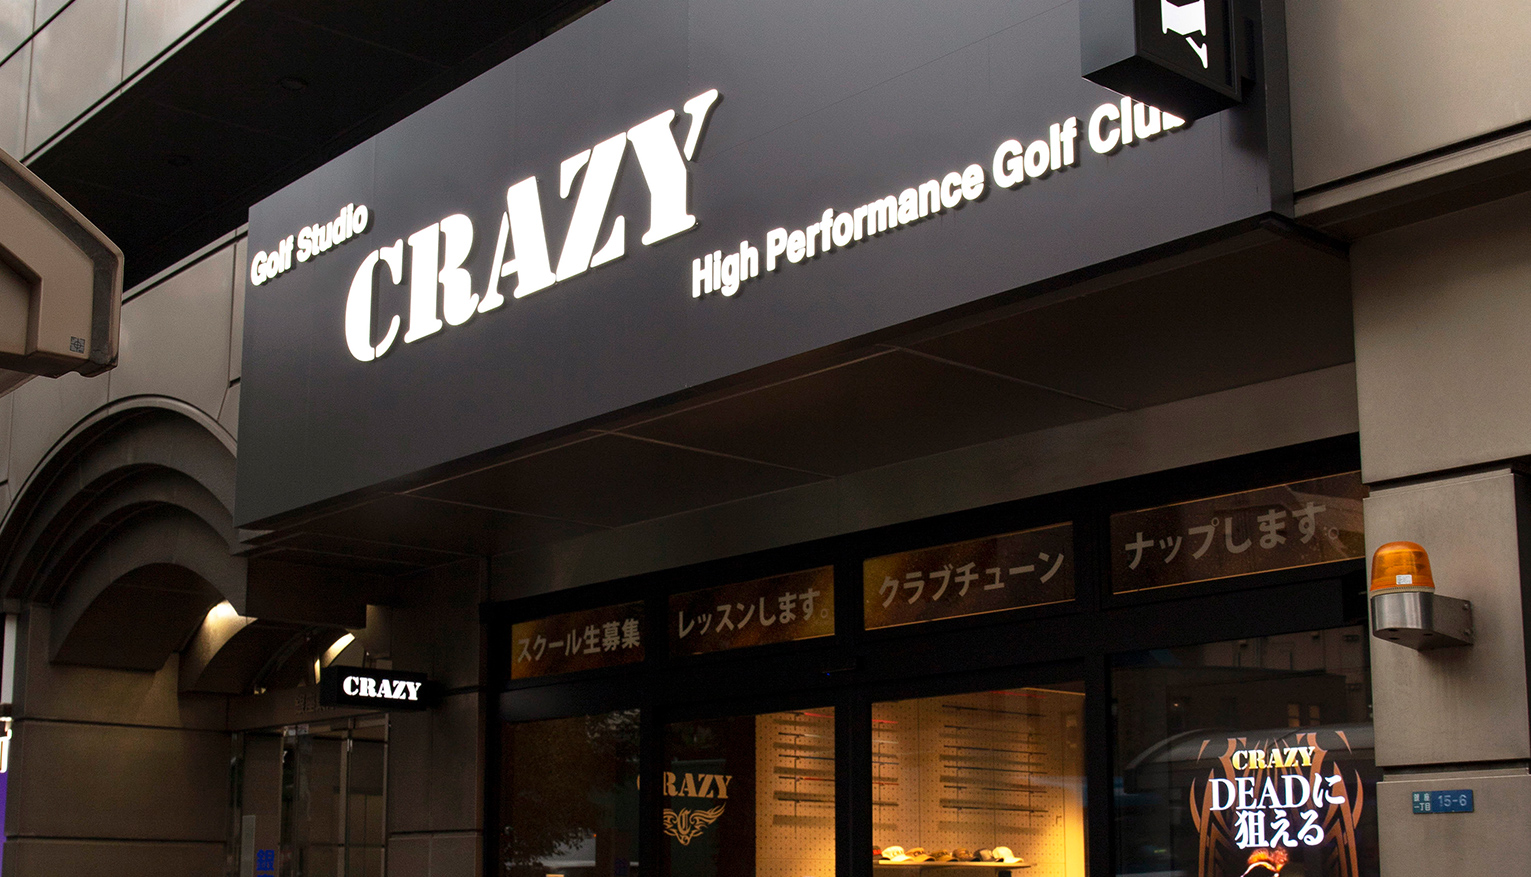 地クラブゴルフメーカー「CRAZY」の銀座本店の外観